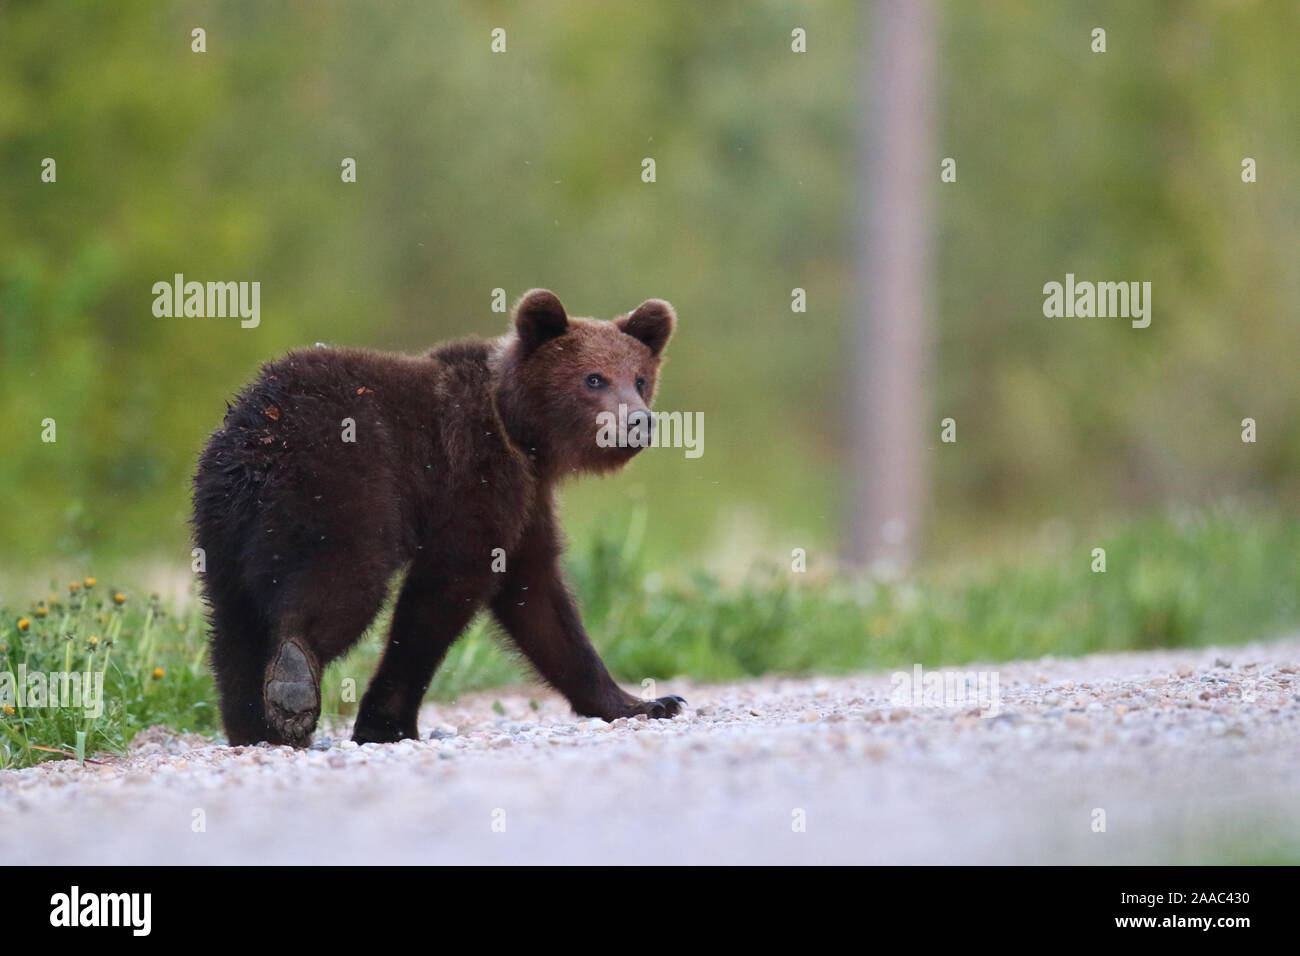 Les jeunes ours brun (Ursus arctos) marcher sur la route dans la forêt. Alutaguse, Estonie Banque D'Images